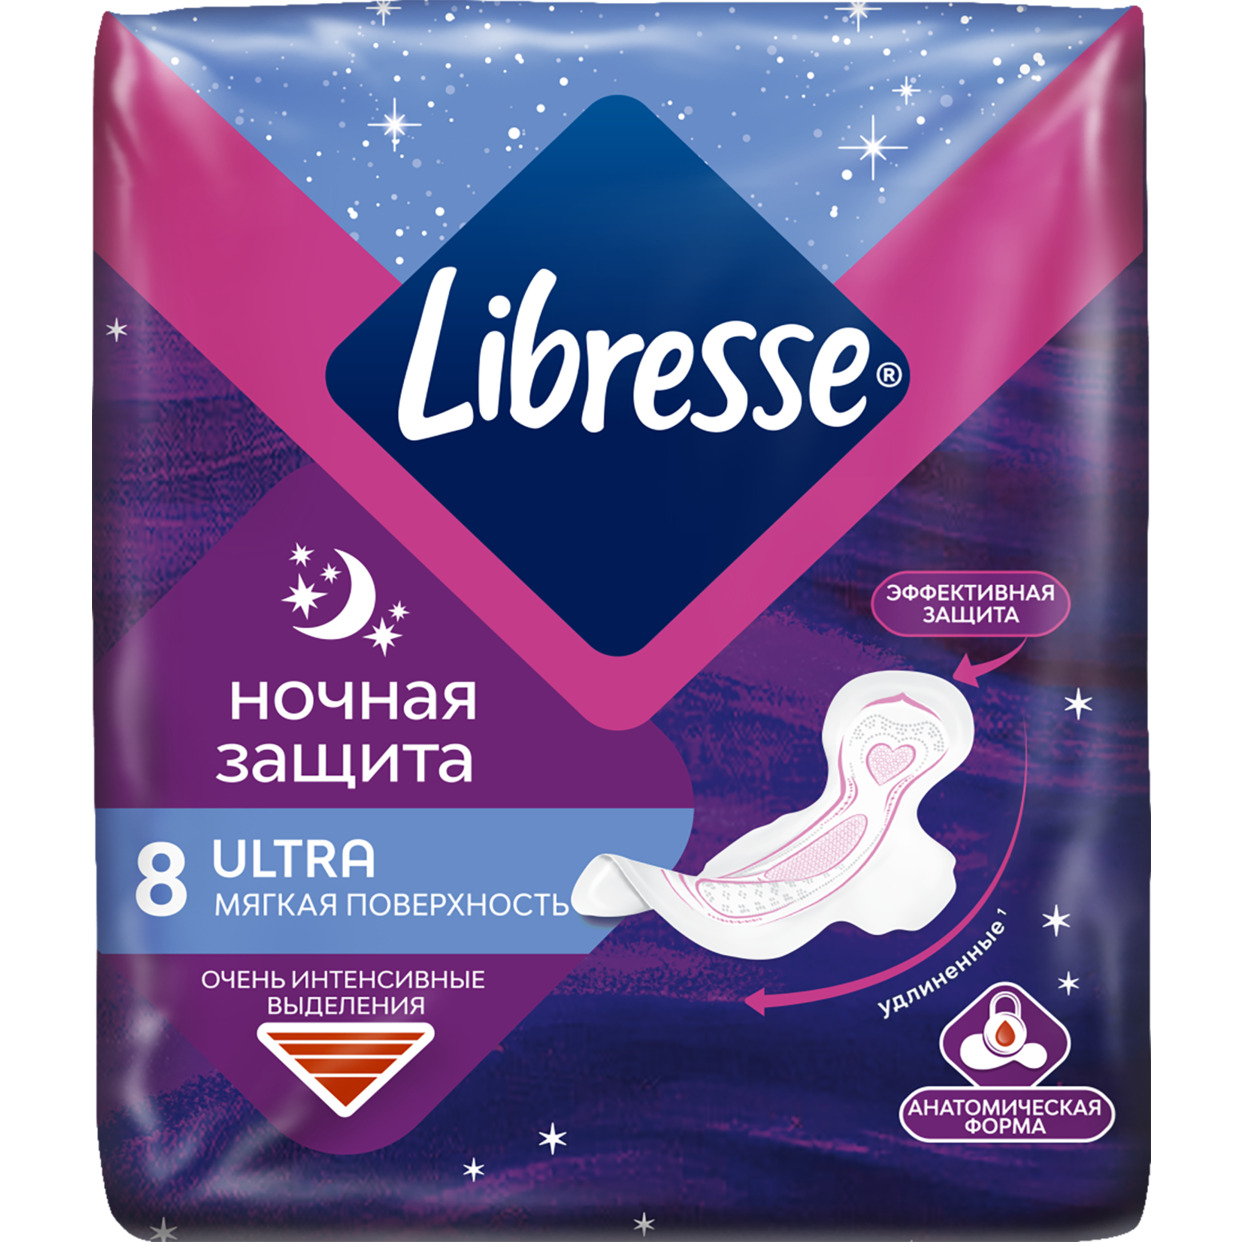 Libresse Ultra Ультротонкие гигиенические прокладки Ночные с мягкой поверхностью, 8шт по акции в Пятерочке